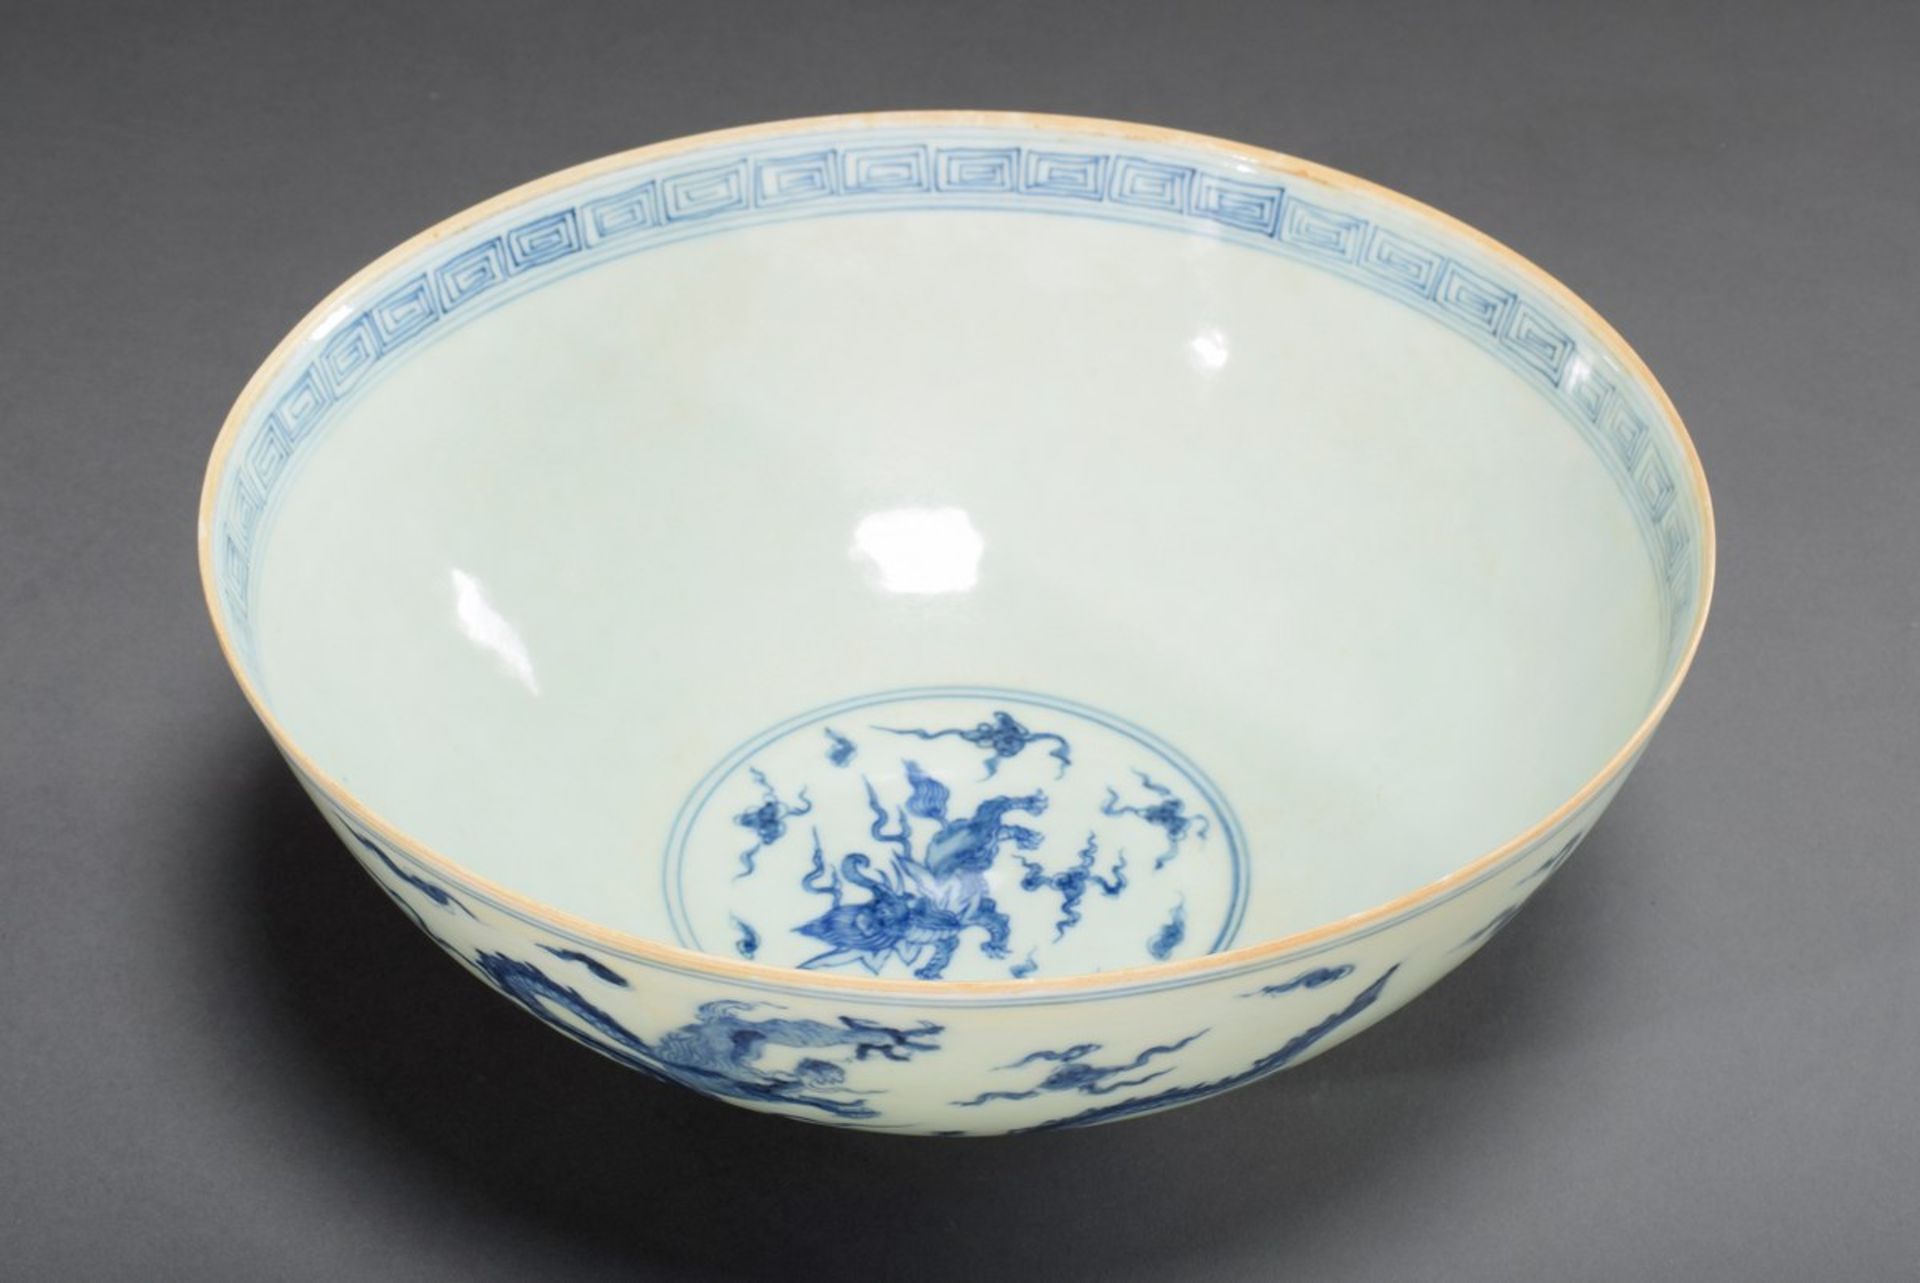 Dünnwandige chinesische Porzellan Schale mit Blaumalerei Dekor "Wolkendrachen" und "Baku", am Boden - Bild 2 aus 6